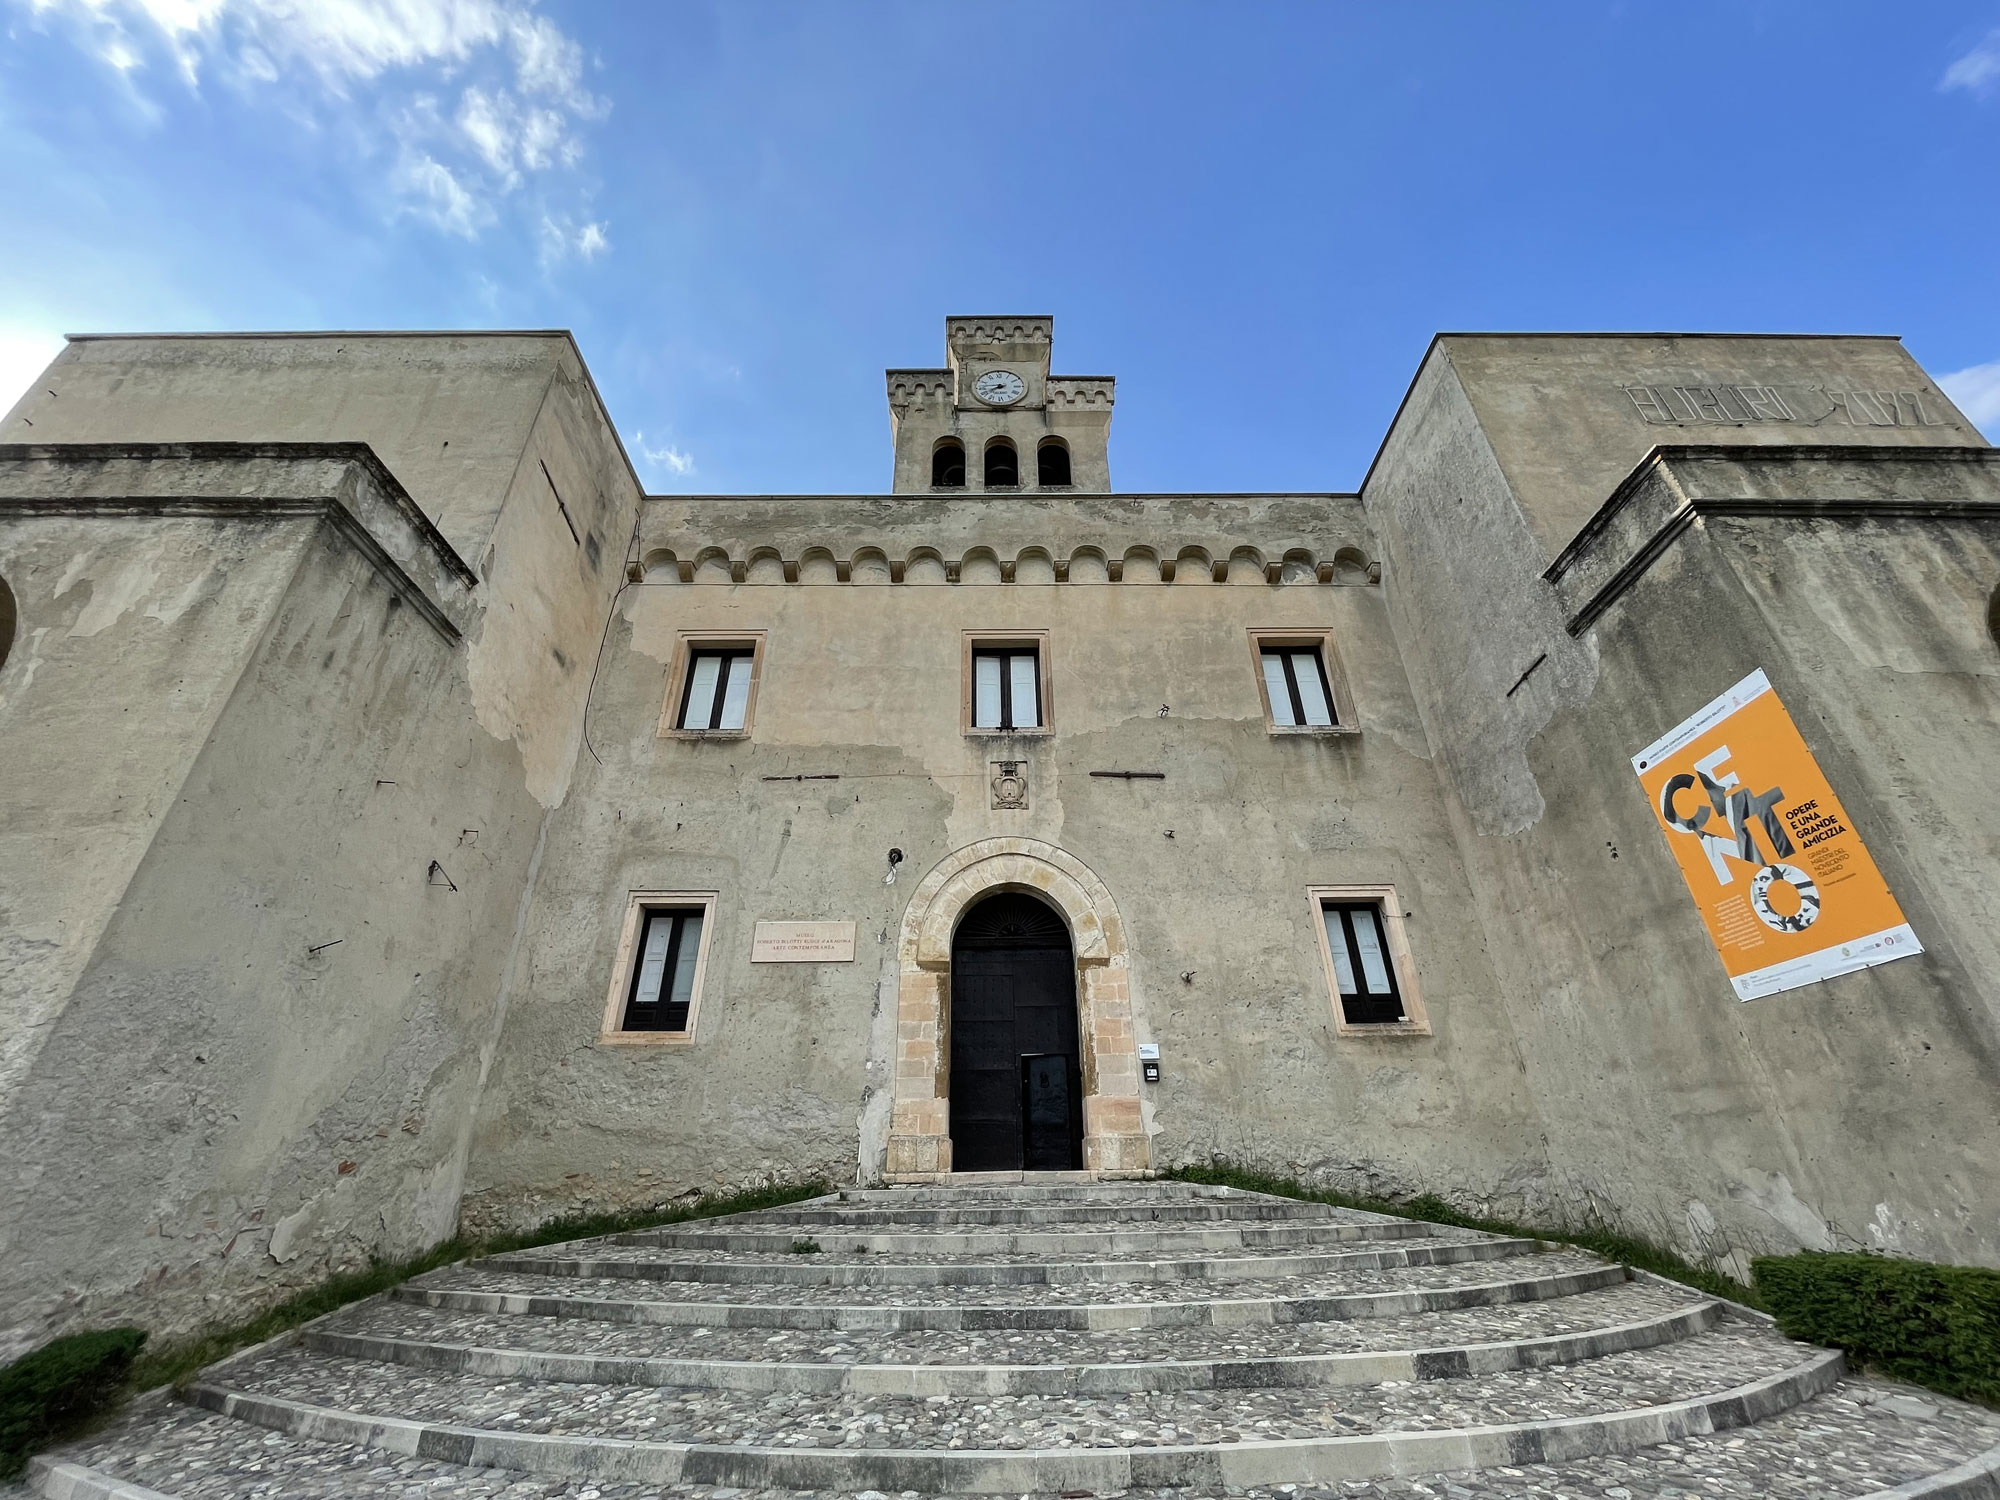 Castello Normanno, Città Storica di Rende - Museo d'Arte Contemporanea Roberto Bilotti Ruggi d'Aragona 